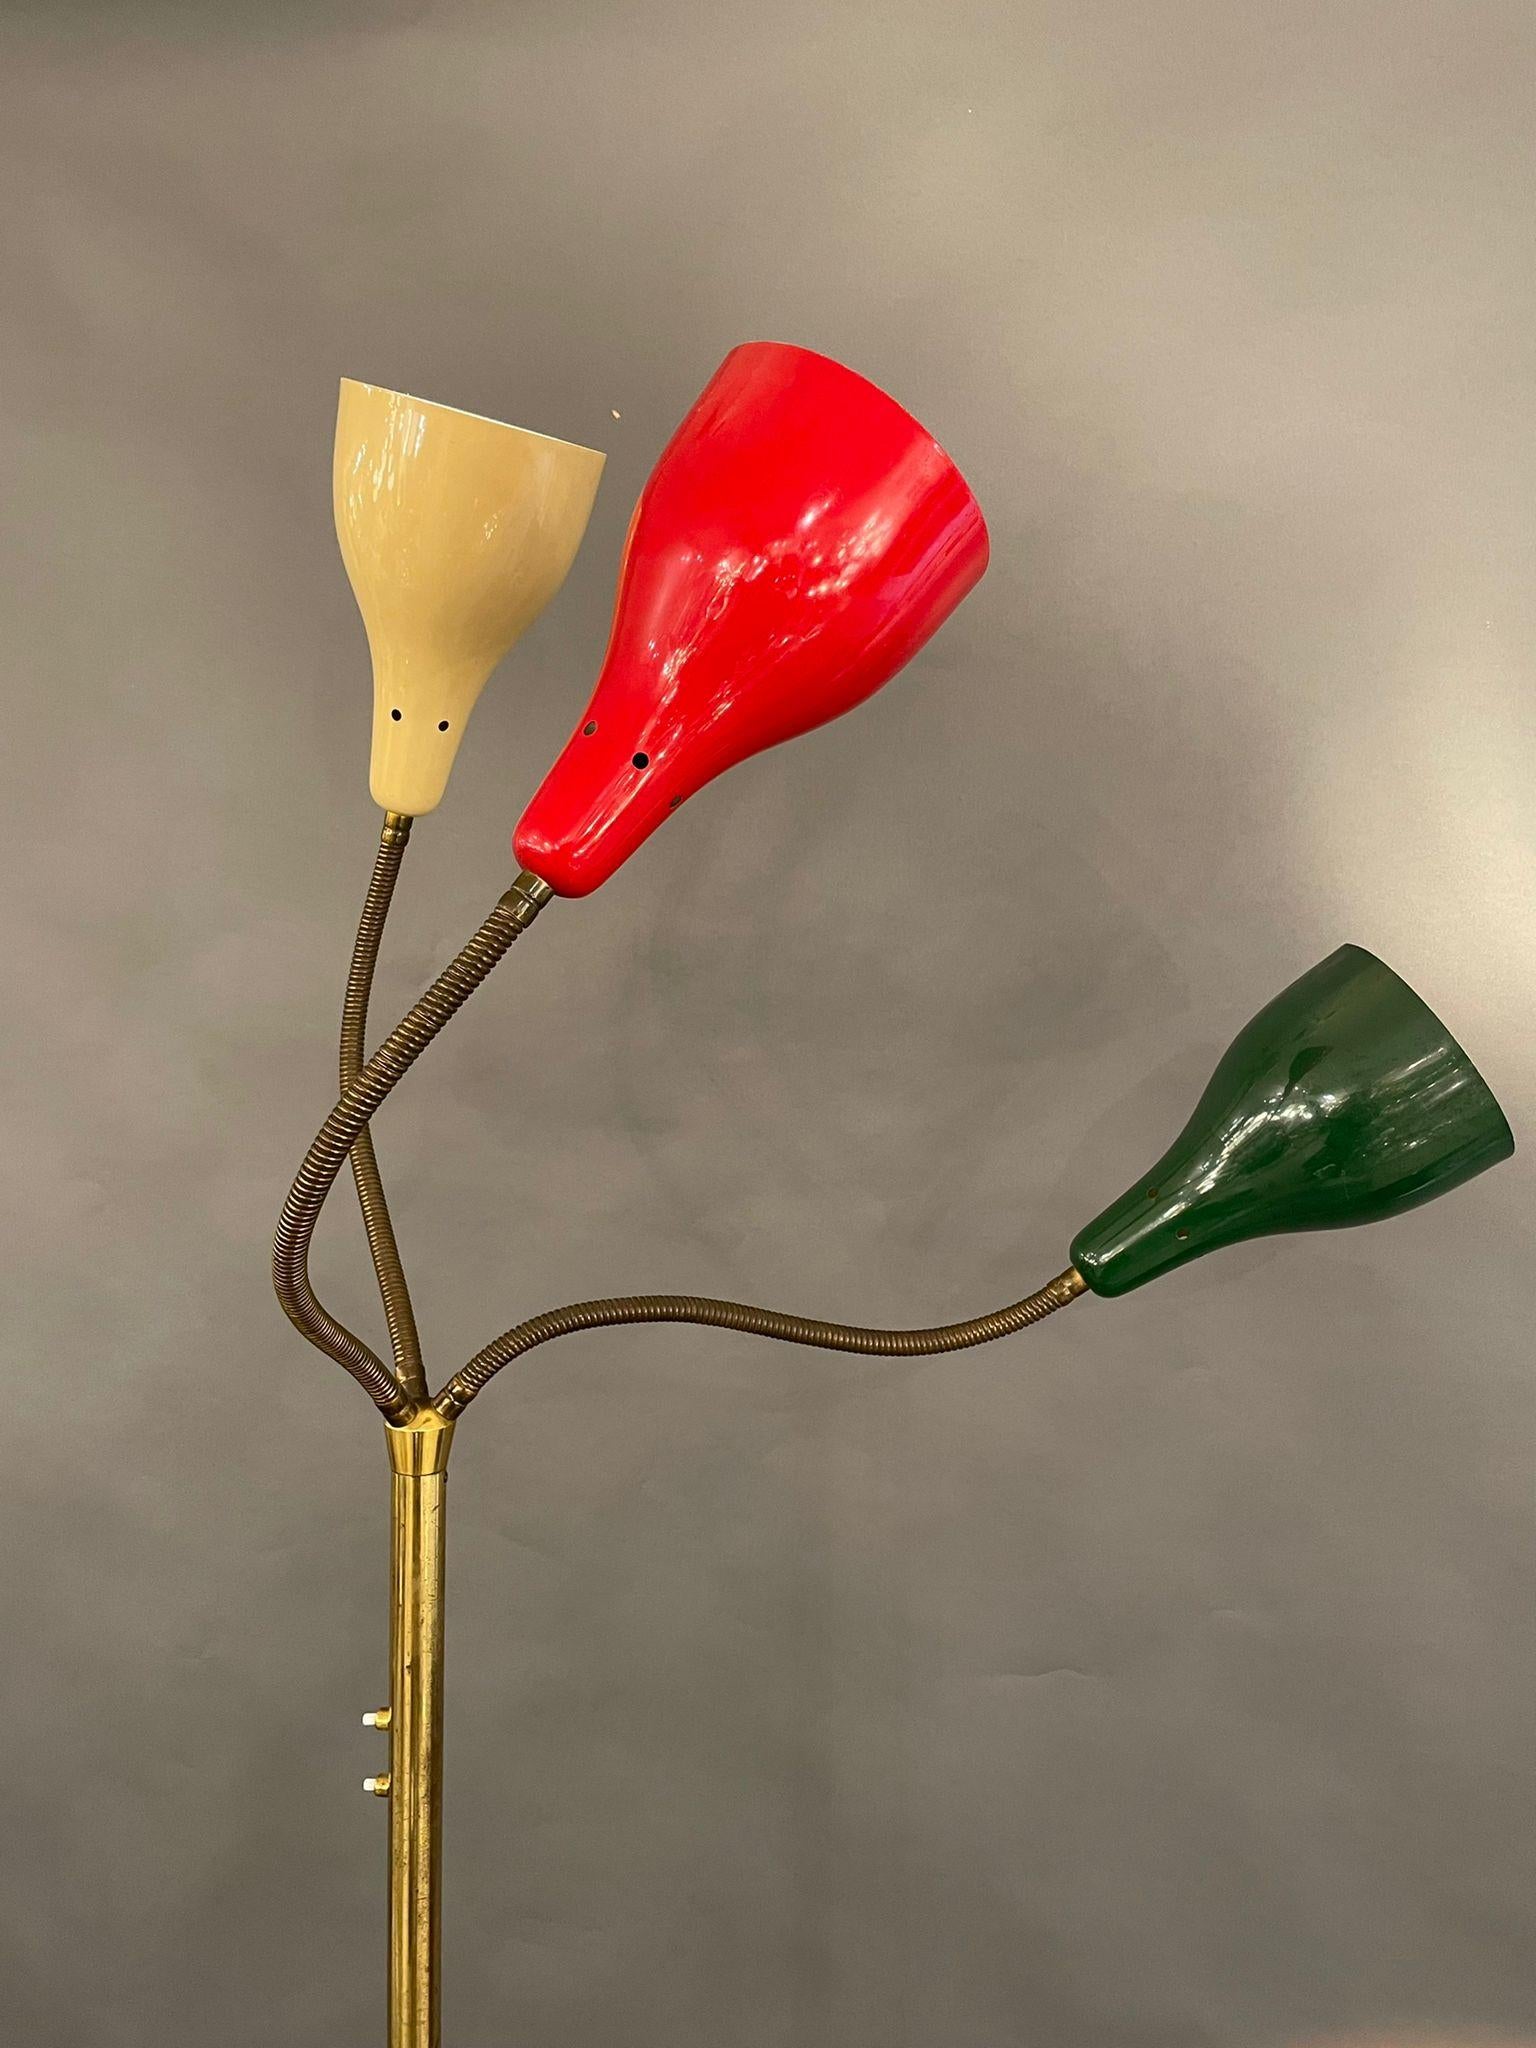 Seltene Stehleuchte von Giuseppe Ostuni, OLuce, Italien, 1950.

Messing poliert, 3 flexible Arme mit original lackierten Reflektoren
rot, weiß, grün

Die Lampe ist in gutem Vintage-Zustand.